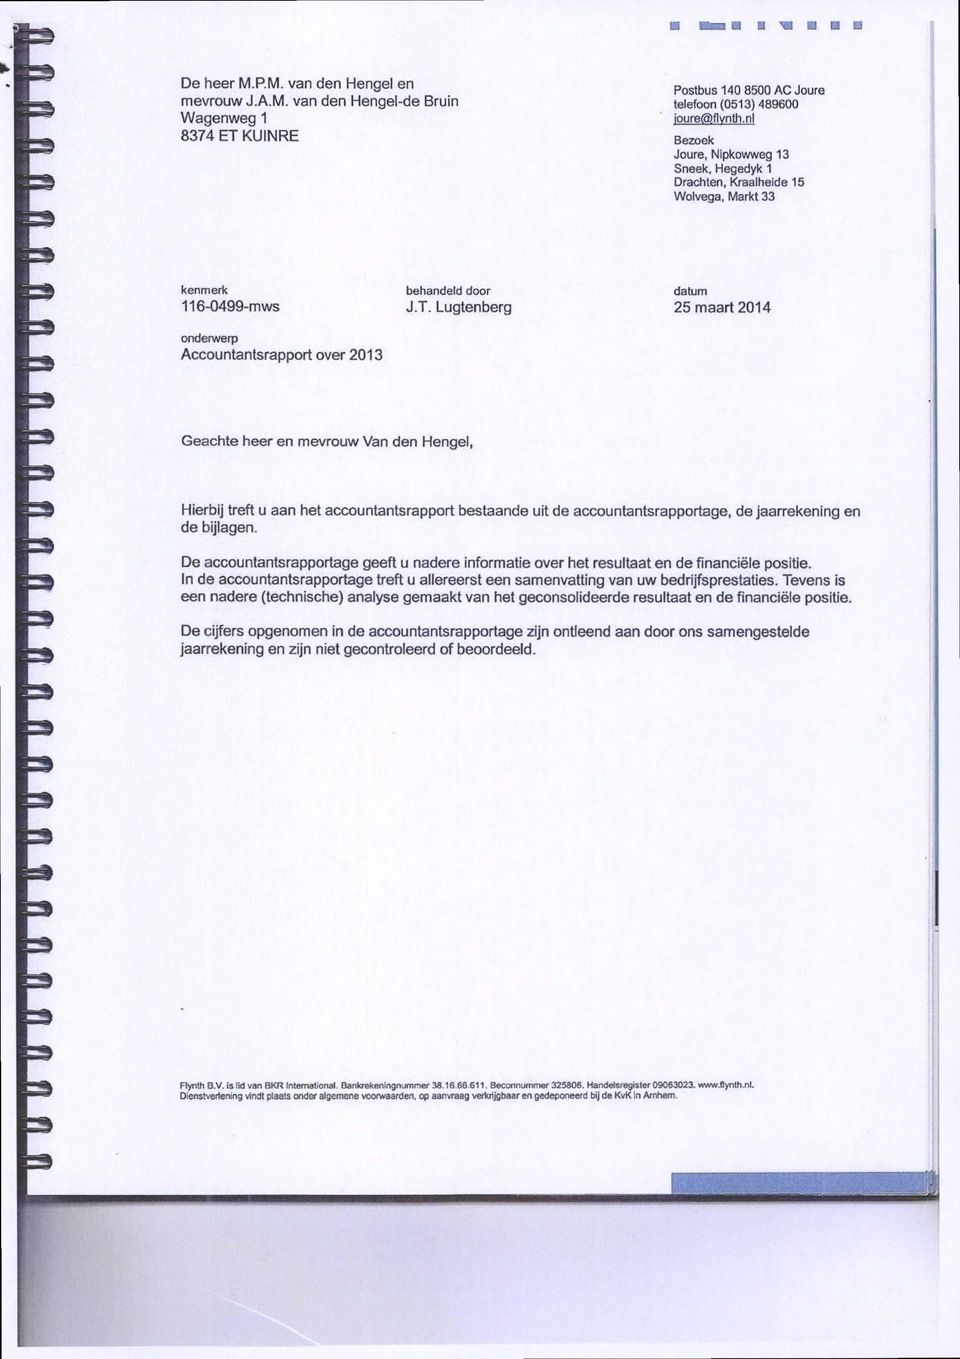 Lugtenberg datum 25 maart 2014 Geachte heer en mevrouw Van den Hengel, Hierbij treft u aan het accountantsrapport bestaande uit de accountantsrapportage, de Jaarrekening en de bijlagen.